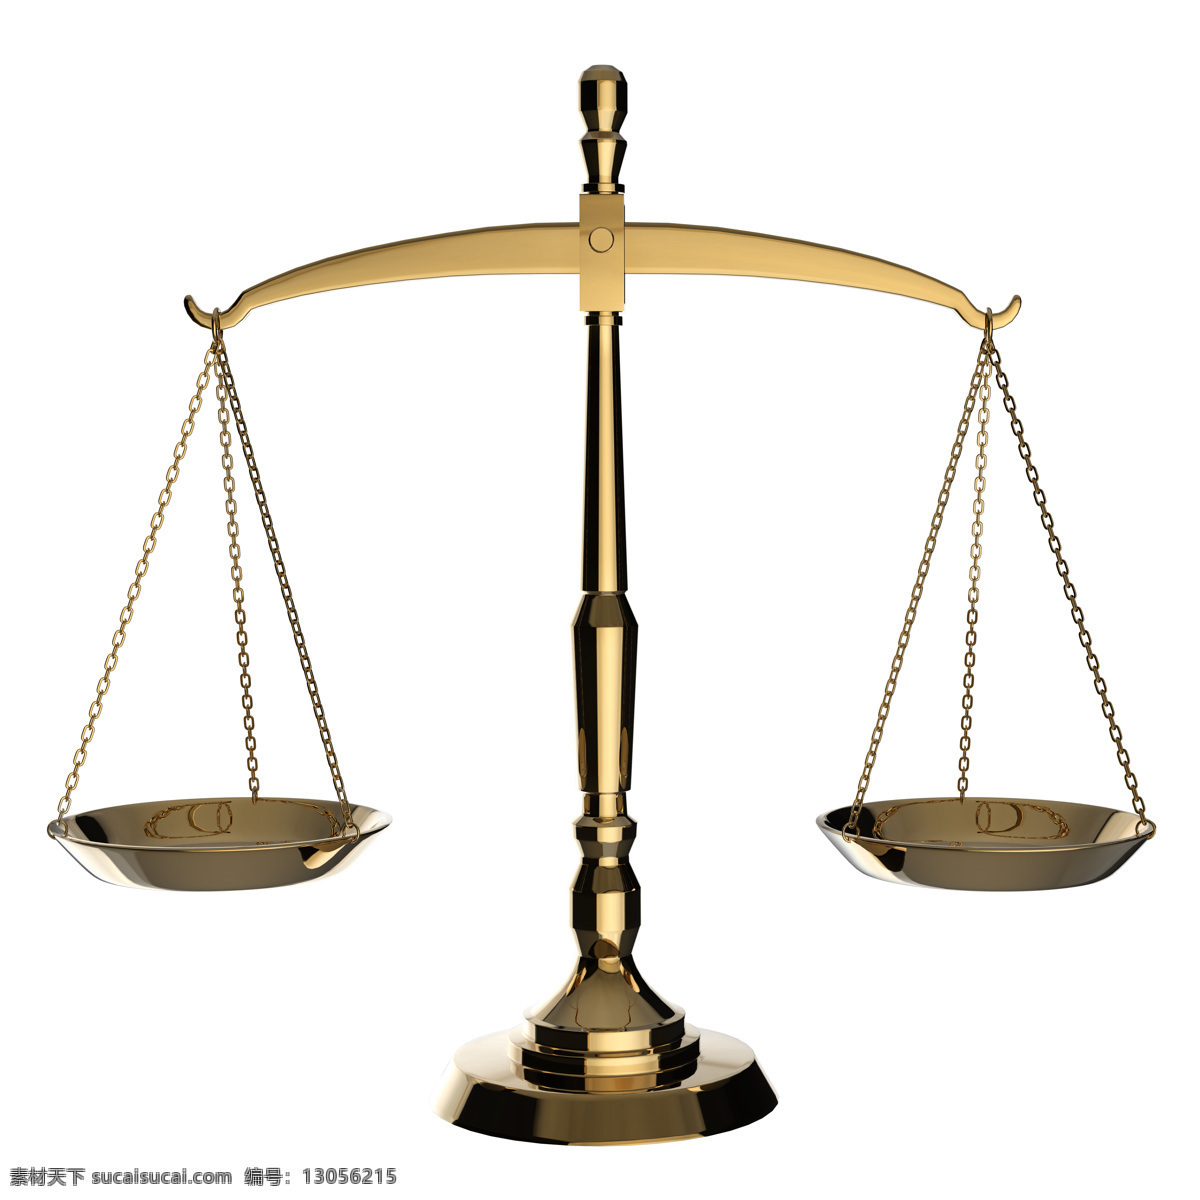 天平 天 秤 司法 公平 天秤 司法公平 法律 法律图片 法律素材 司法图片 司法素材 生活素材 生活百科